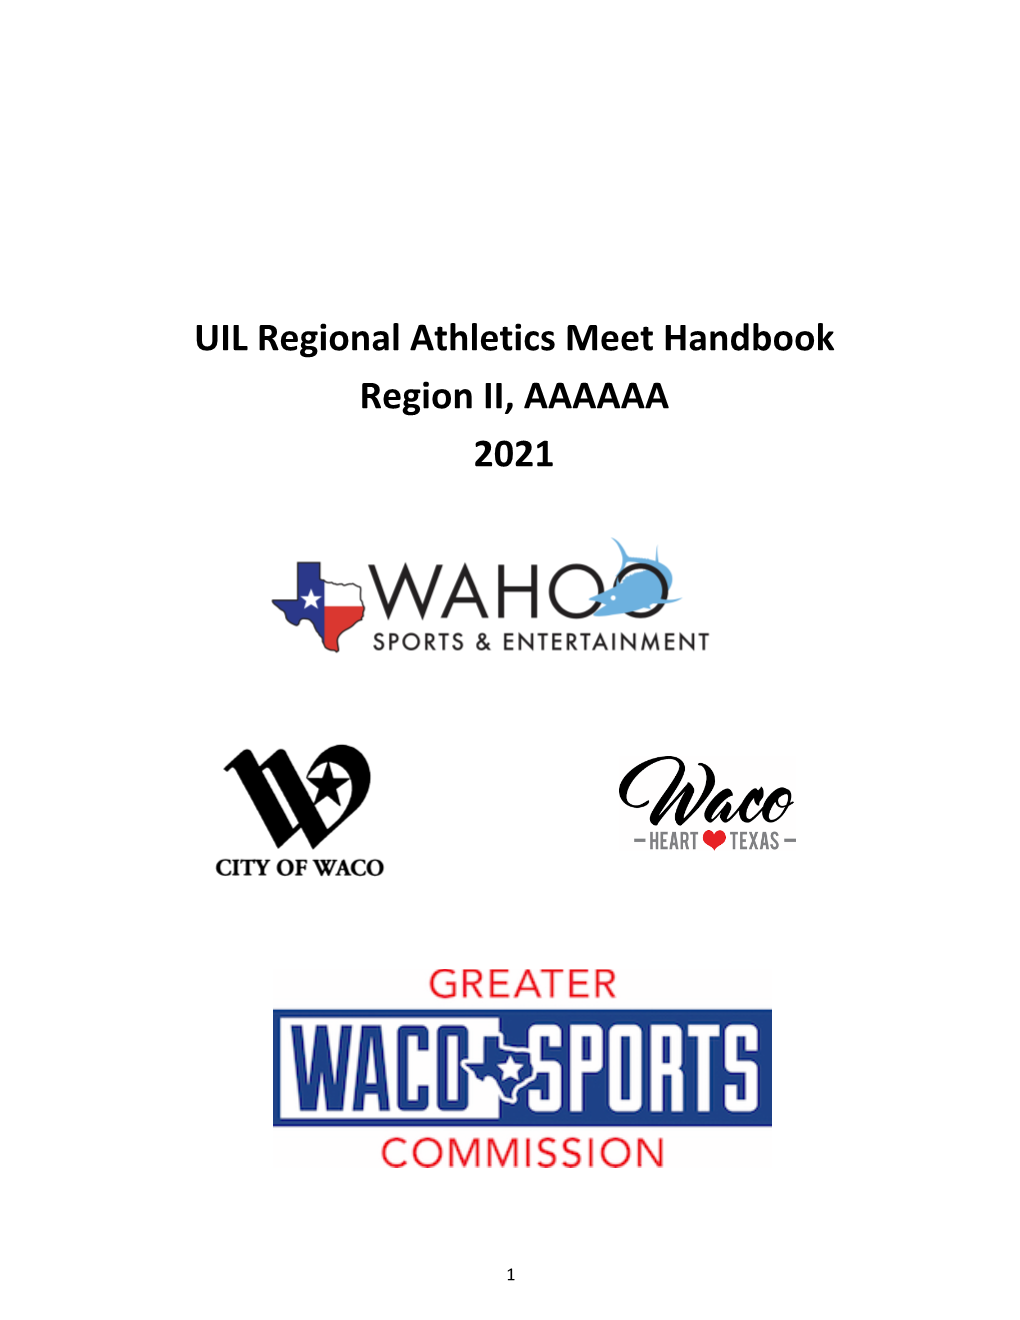 UIL Regional Athletics Meet Handbook Region II, AAAAAA 2021